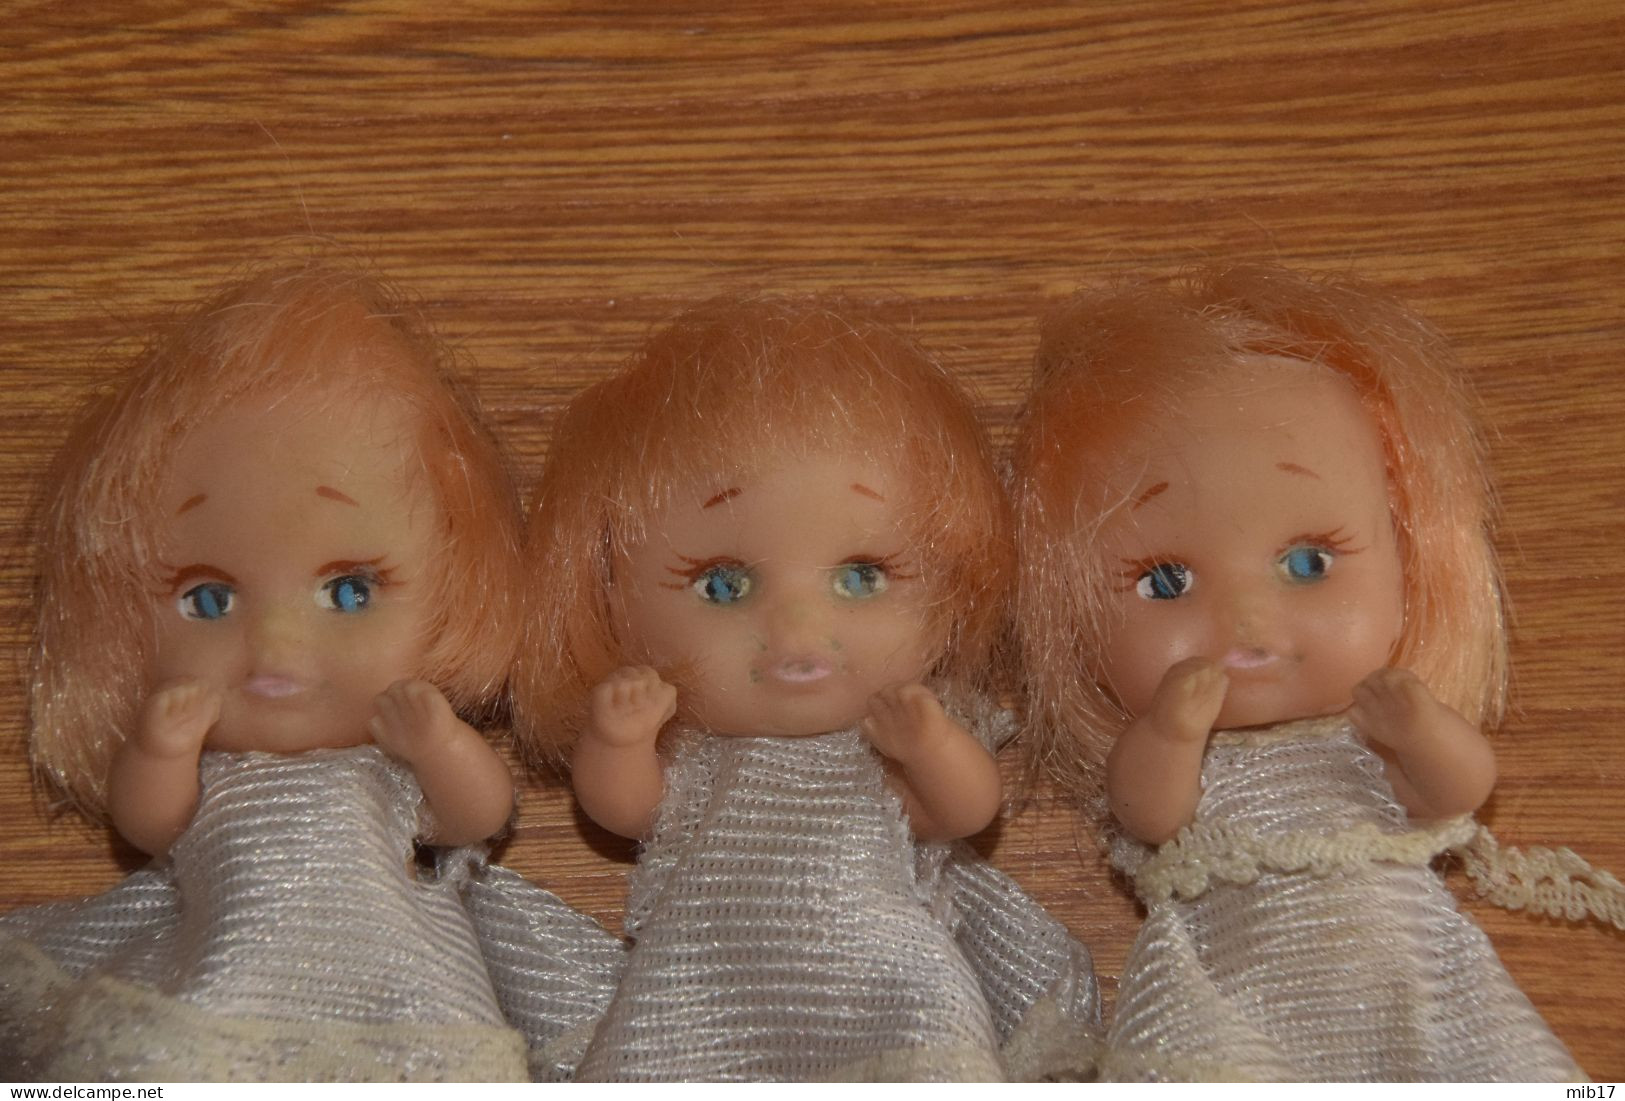 Lot 3 Poupées Miniatures - Puppen